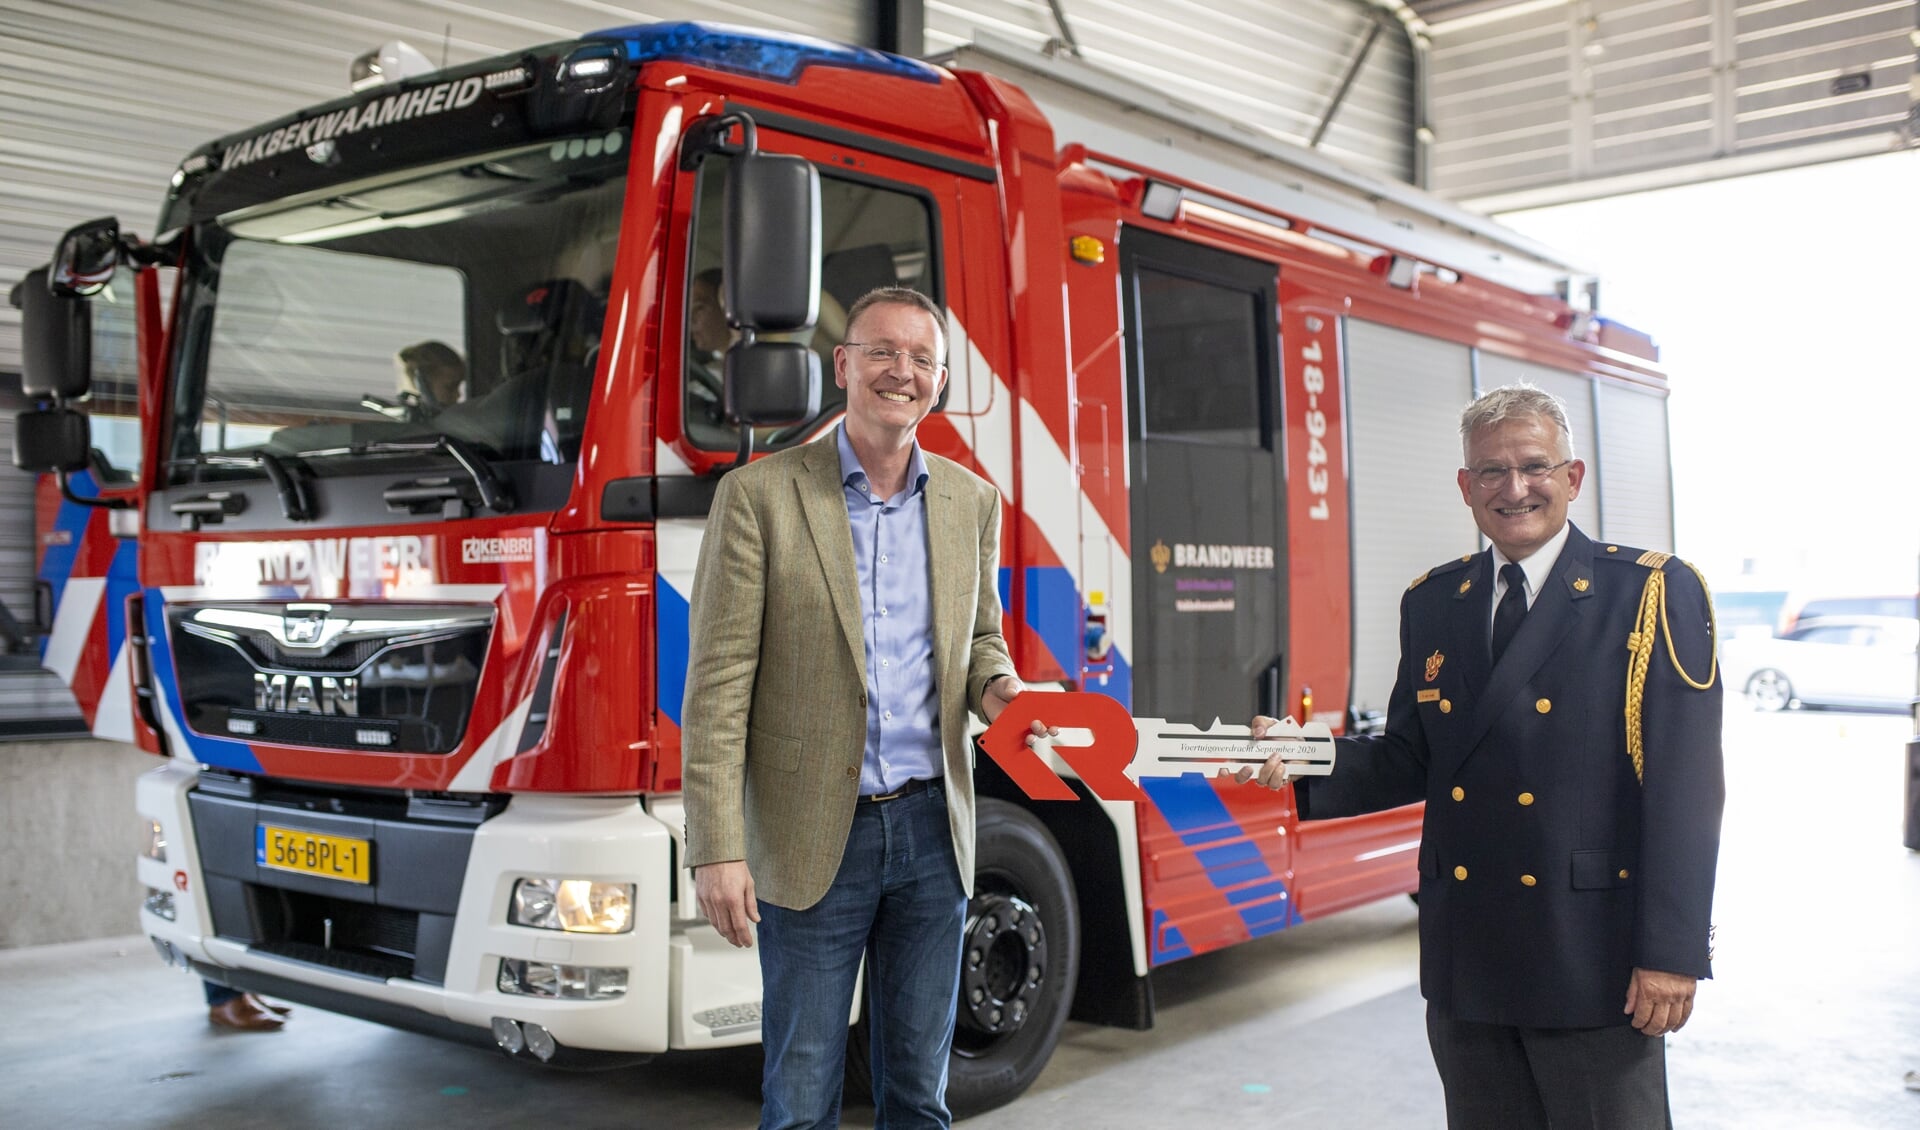 • De overdracht van de eerste nieuwe tankautospuit voor de regio Zuid-Holland Zuid.